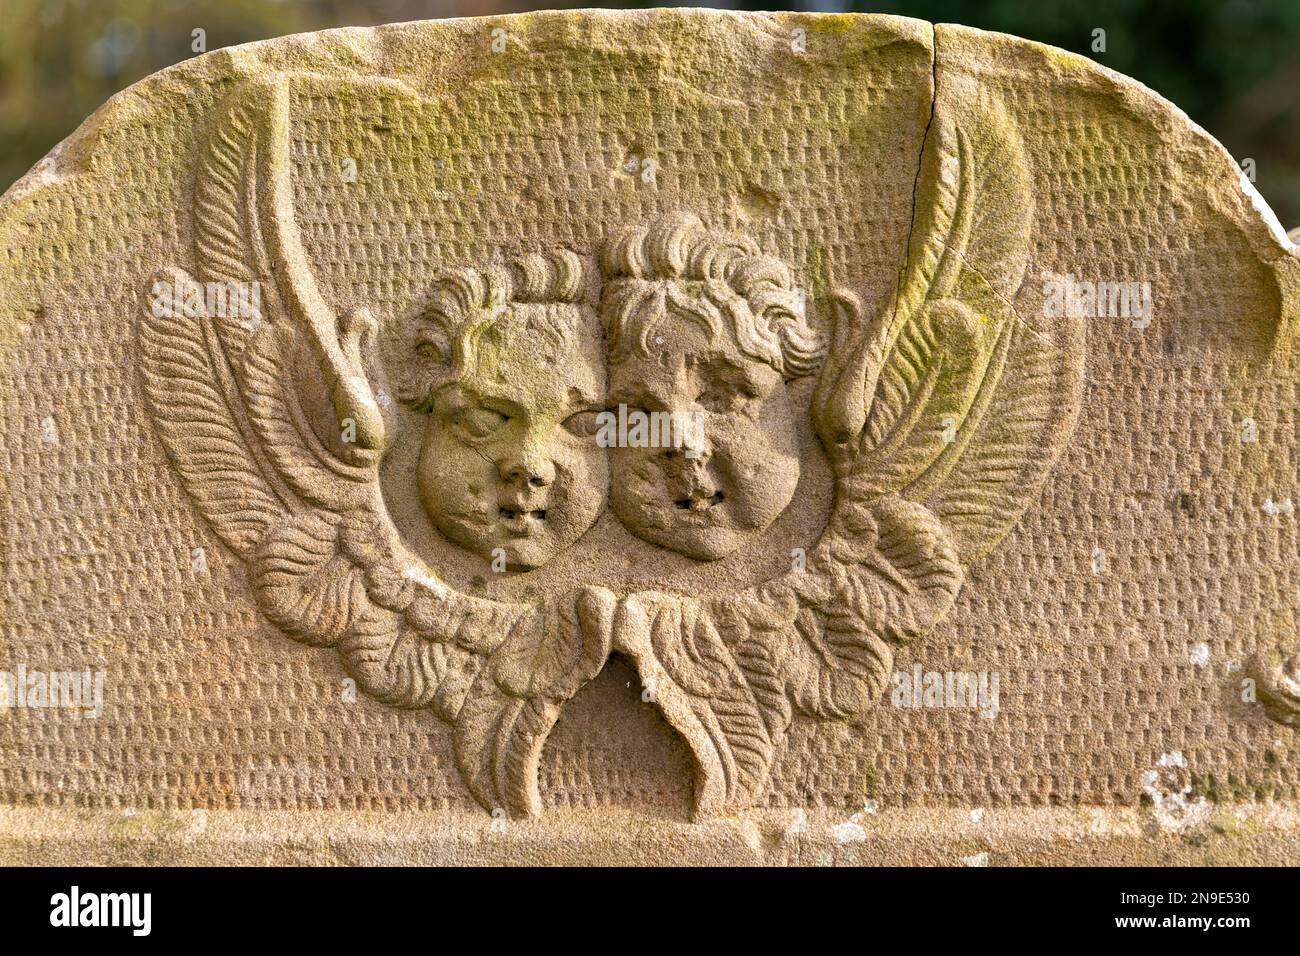 Gesichter von zwei Engeln oder Engeln, die auf Grabstein geschnitzt wurden, Shottisham, Suffolk, England, Großbritannien Stockfoto